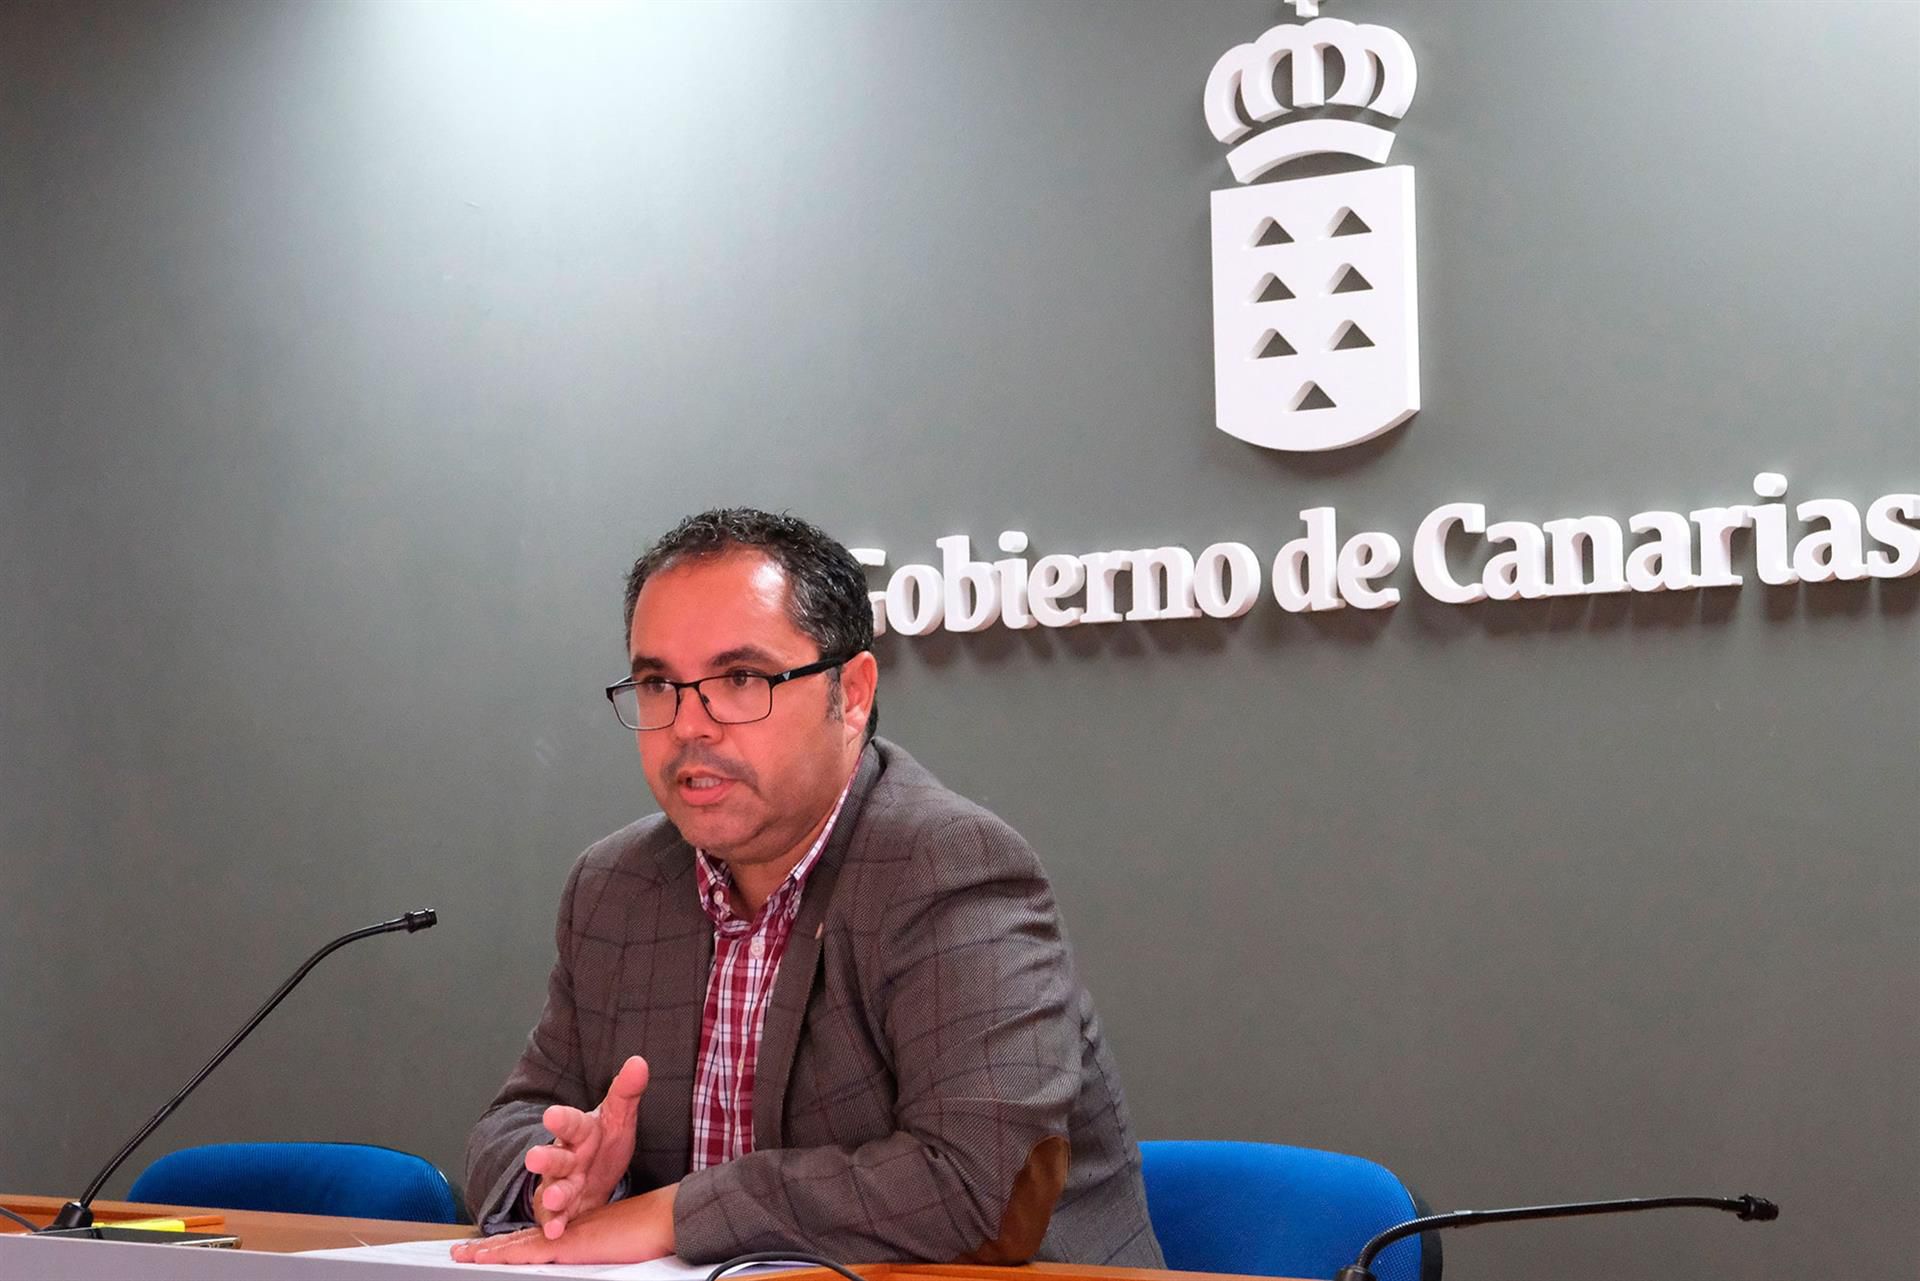  El Gobierno de Canarias destaca que ha registrado el mayor aumento de ocupados de toda España en el último año